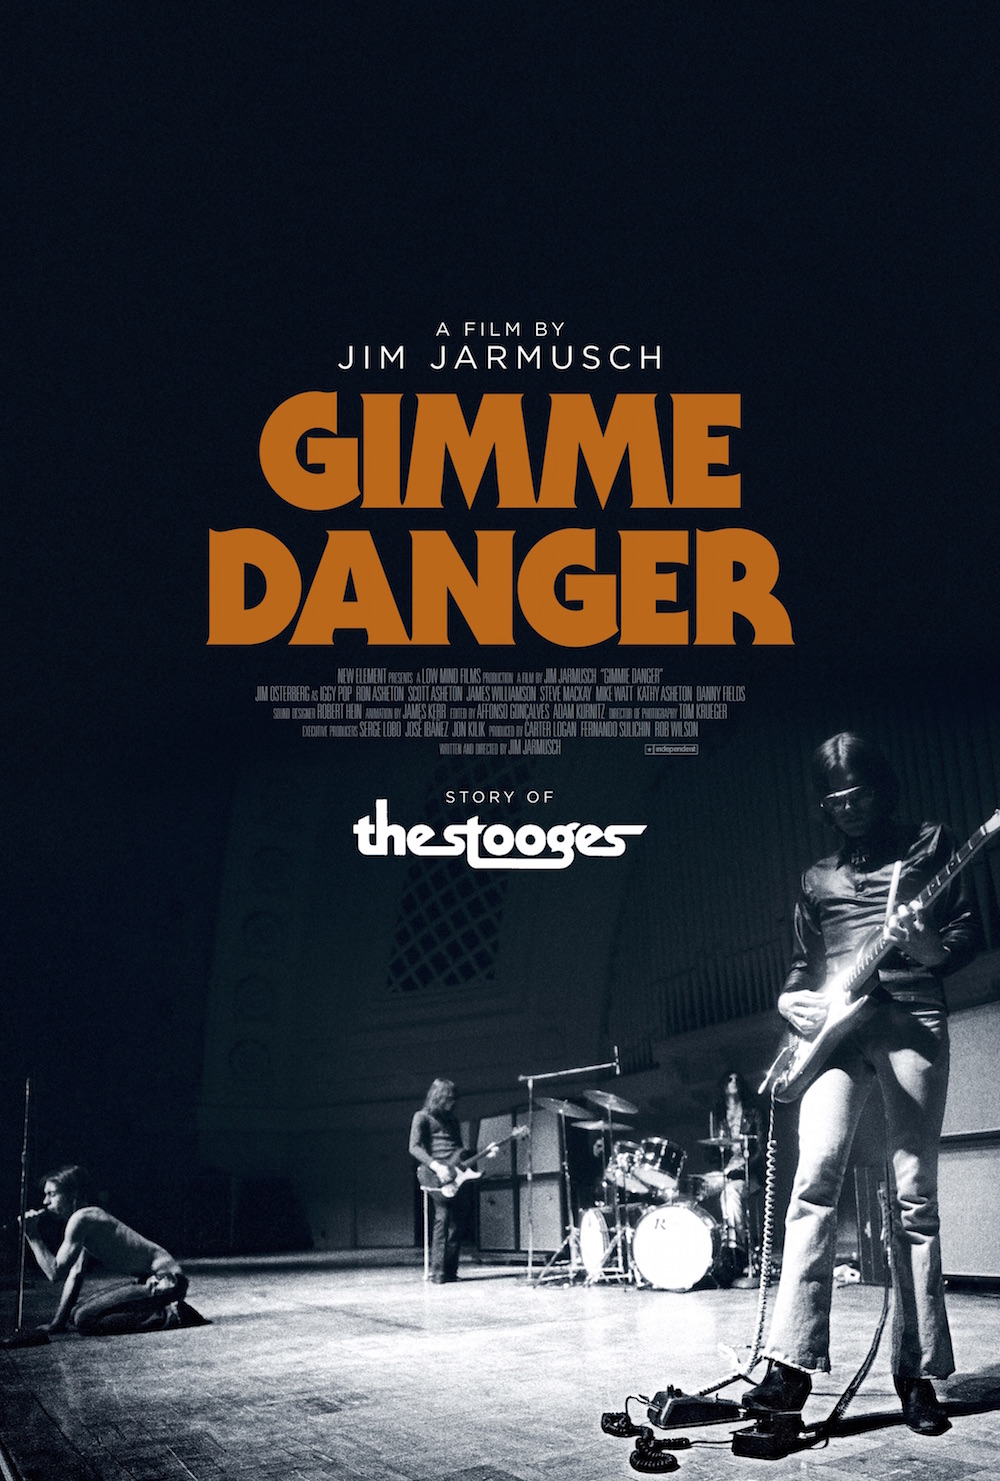 documentales de rock - Documentales de Rock - Página 20 Gimme-danger-2